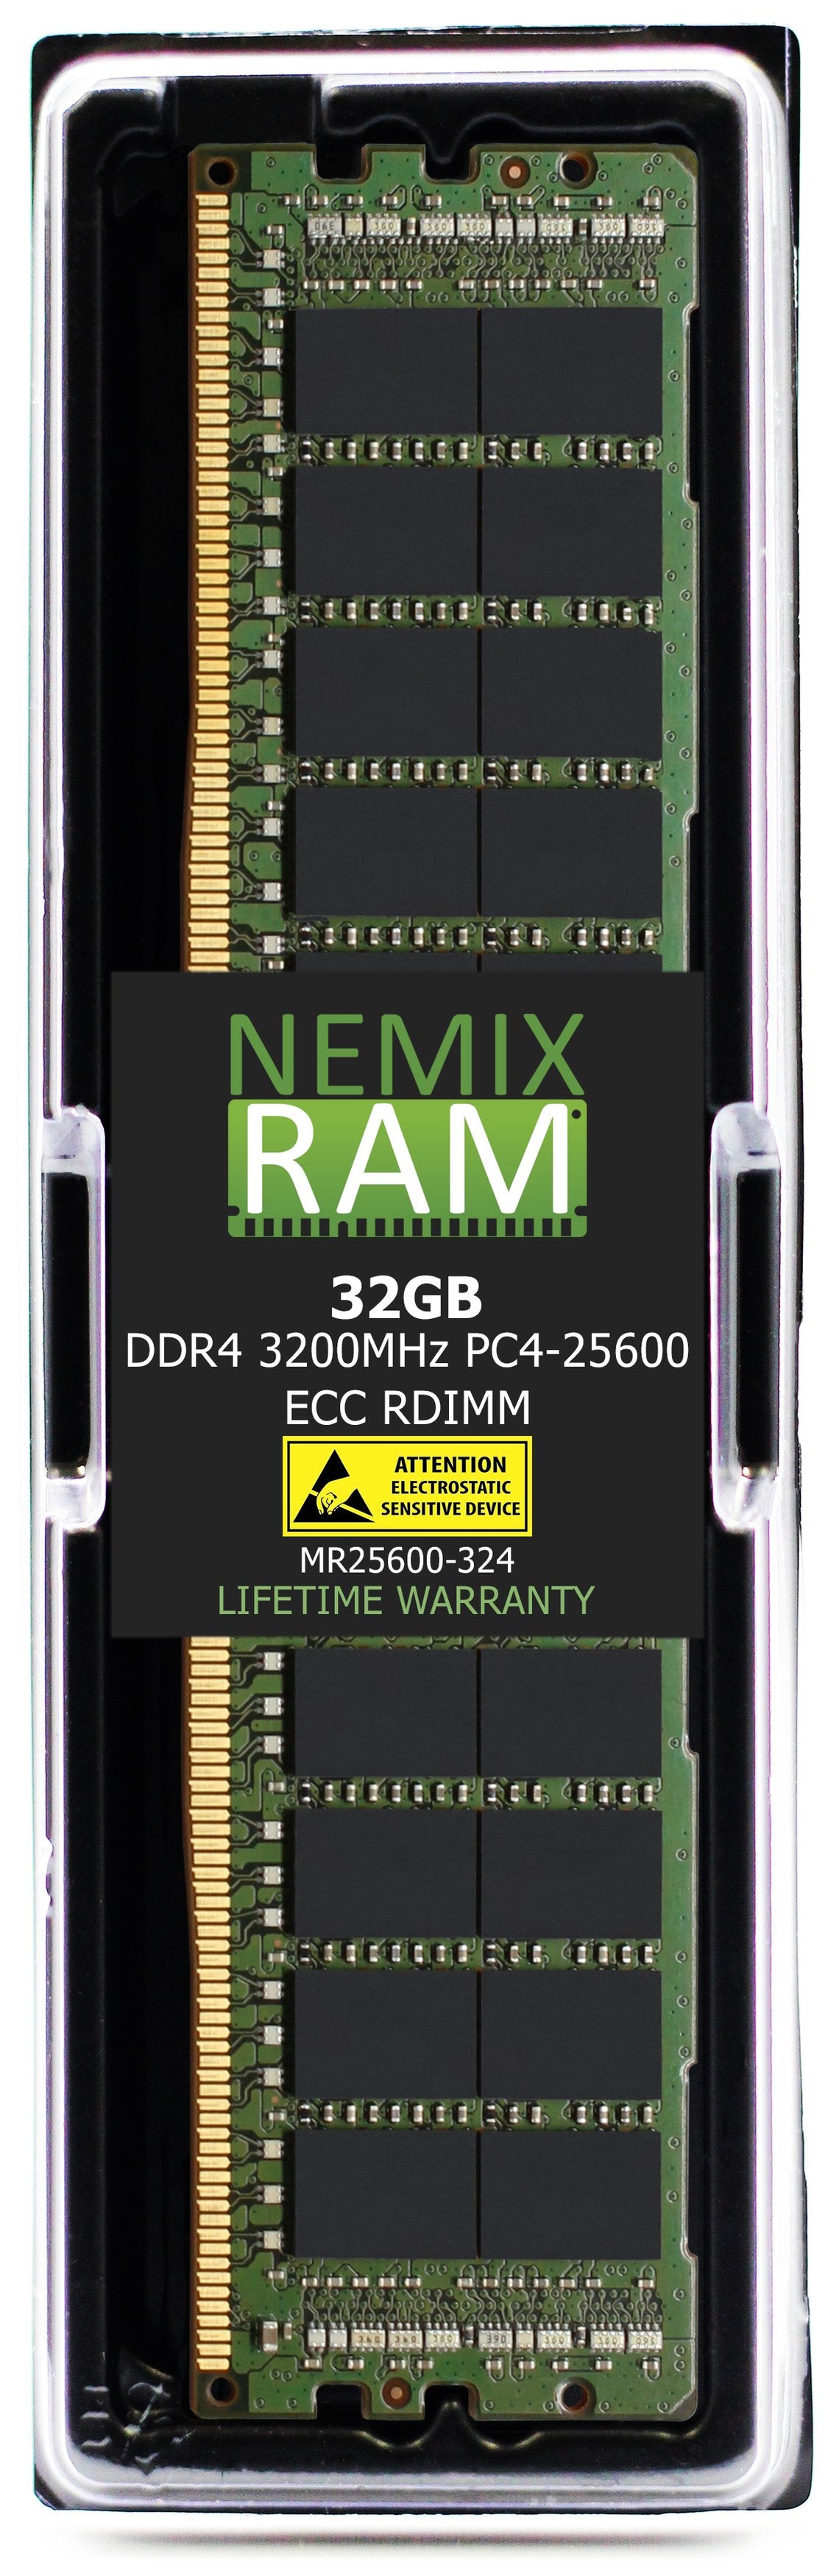 32GB DDR4 3200MHZ PC4-25600 RDIMM Compatible with Supermicro MEM-DR464L-CL03-ER32